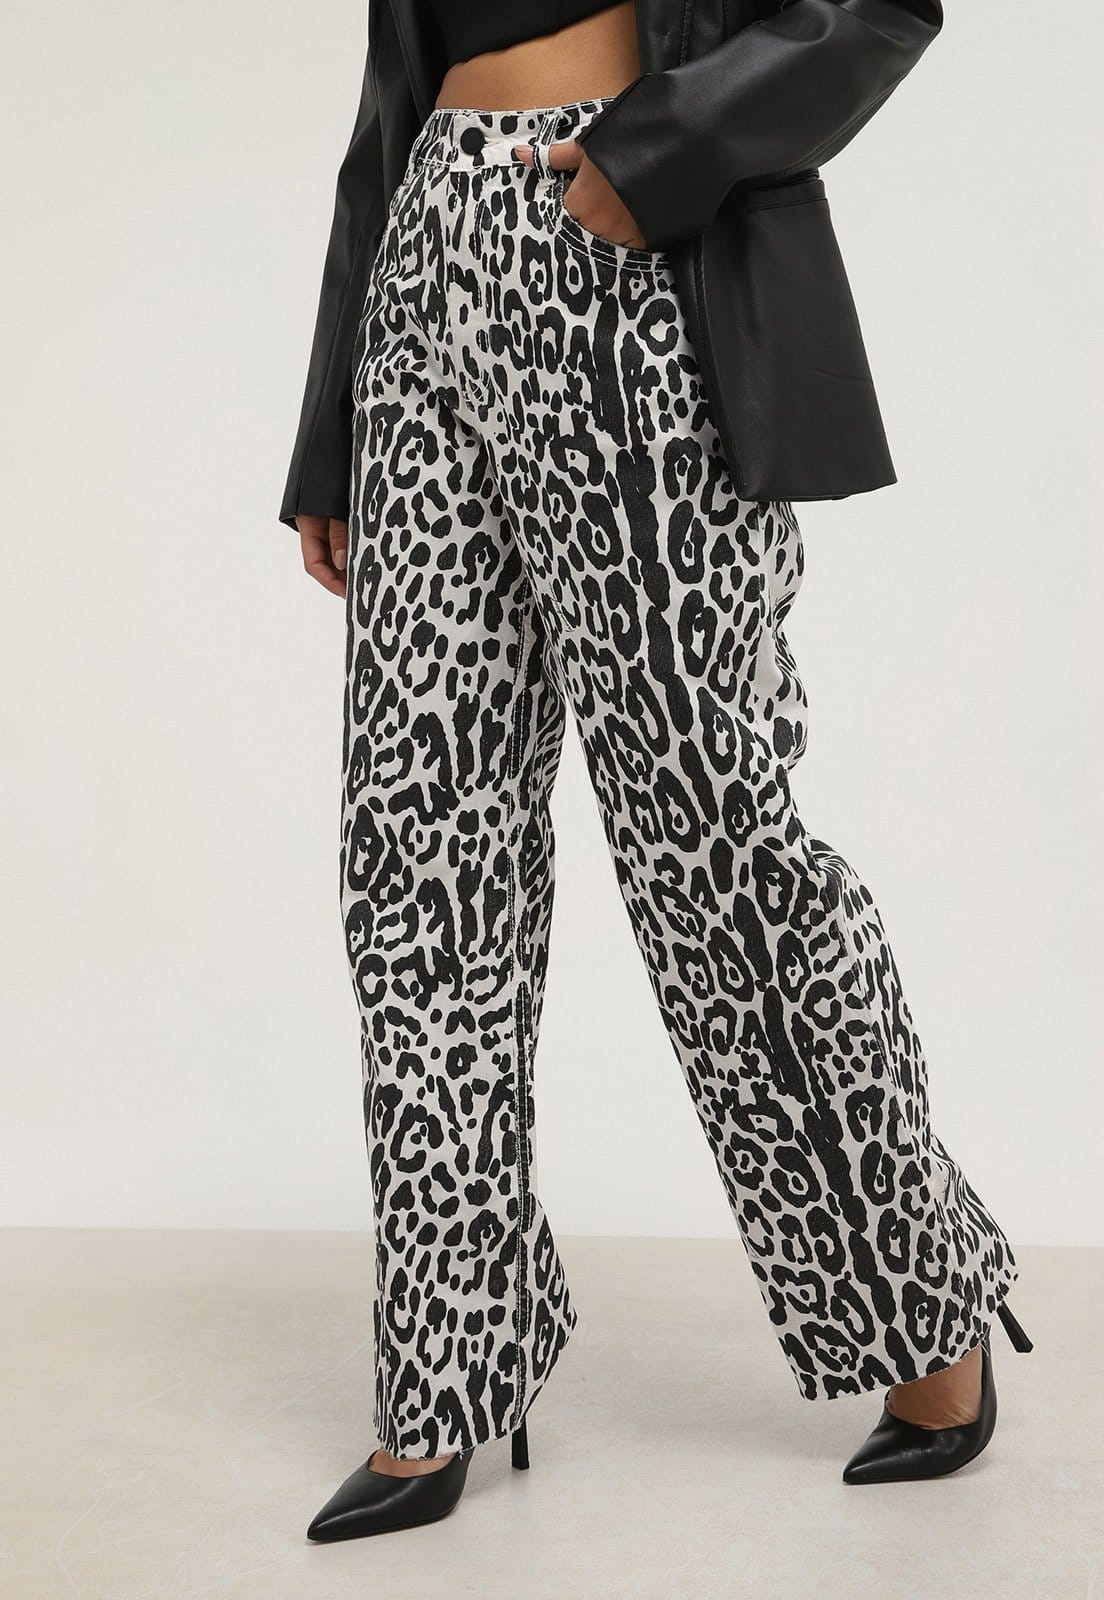 CINNTRE - LancaPerfume - Jeans Leopard